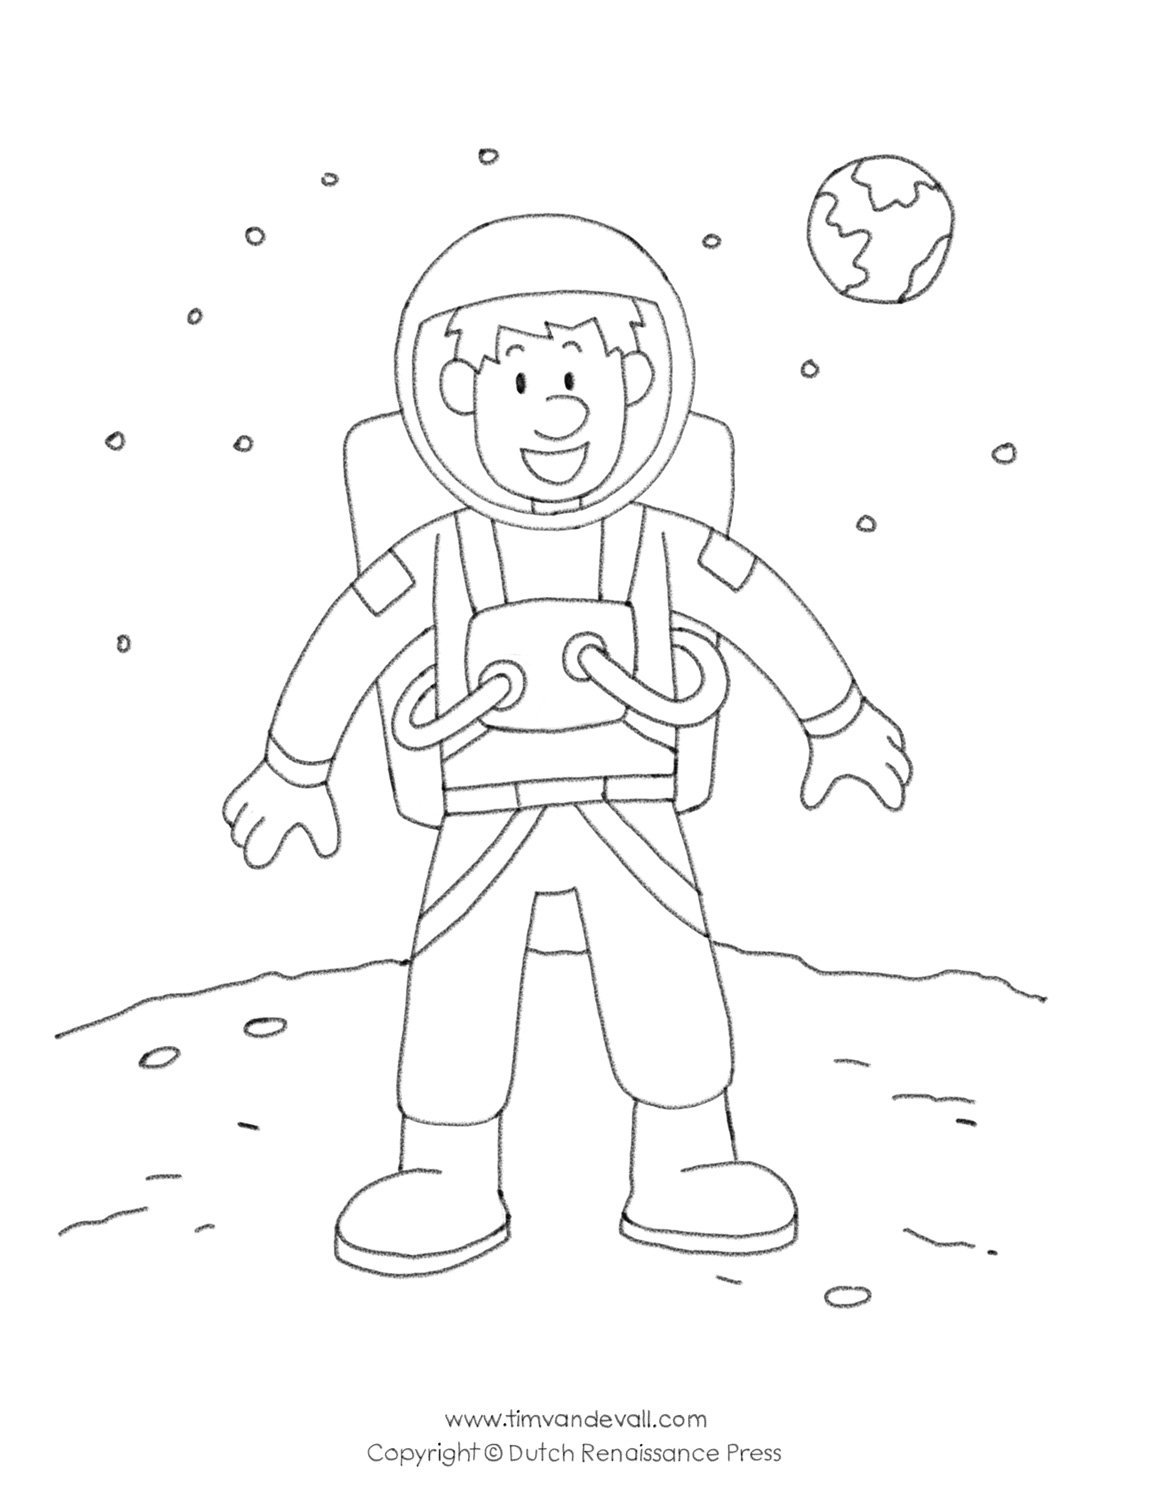 Нарисовать космонавта карандашом. Космонавт раскраска для детей. Космонавт рисунок для детей карандашом. Космонавт раскраска для малышей. Раскраска Космонавта в скафандре для детей.